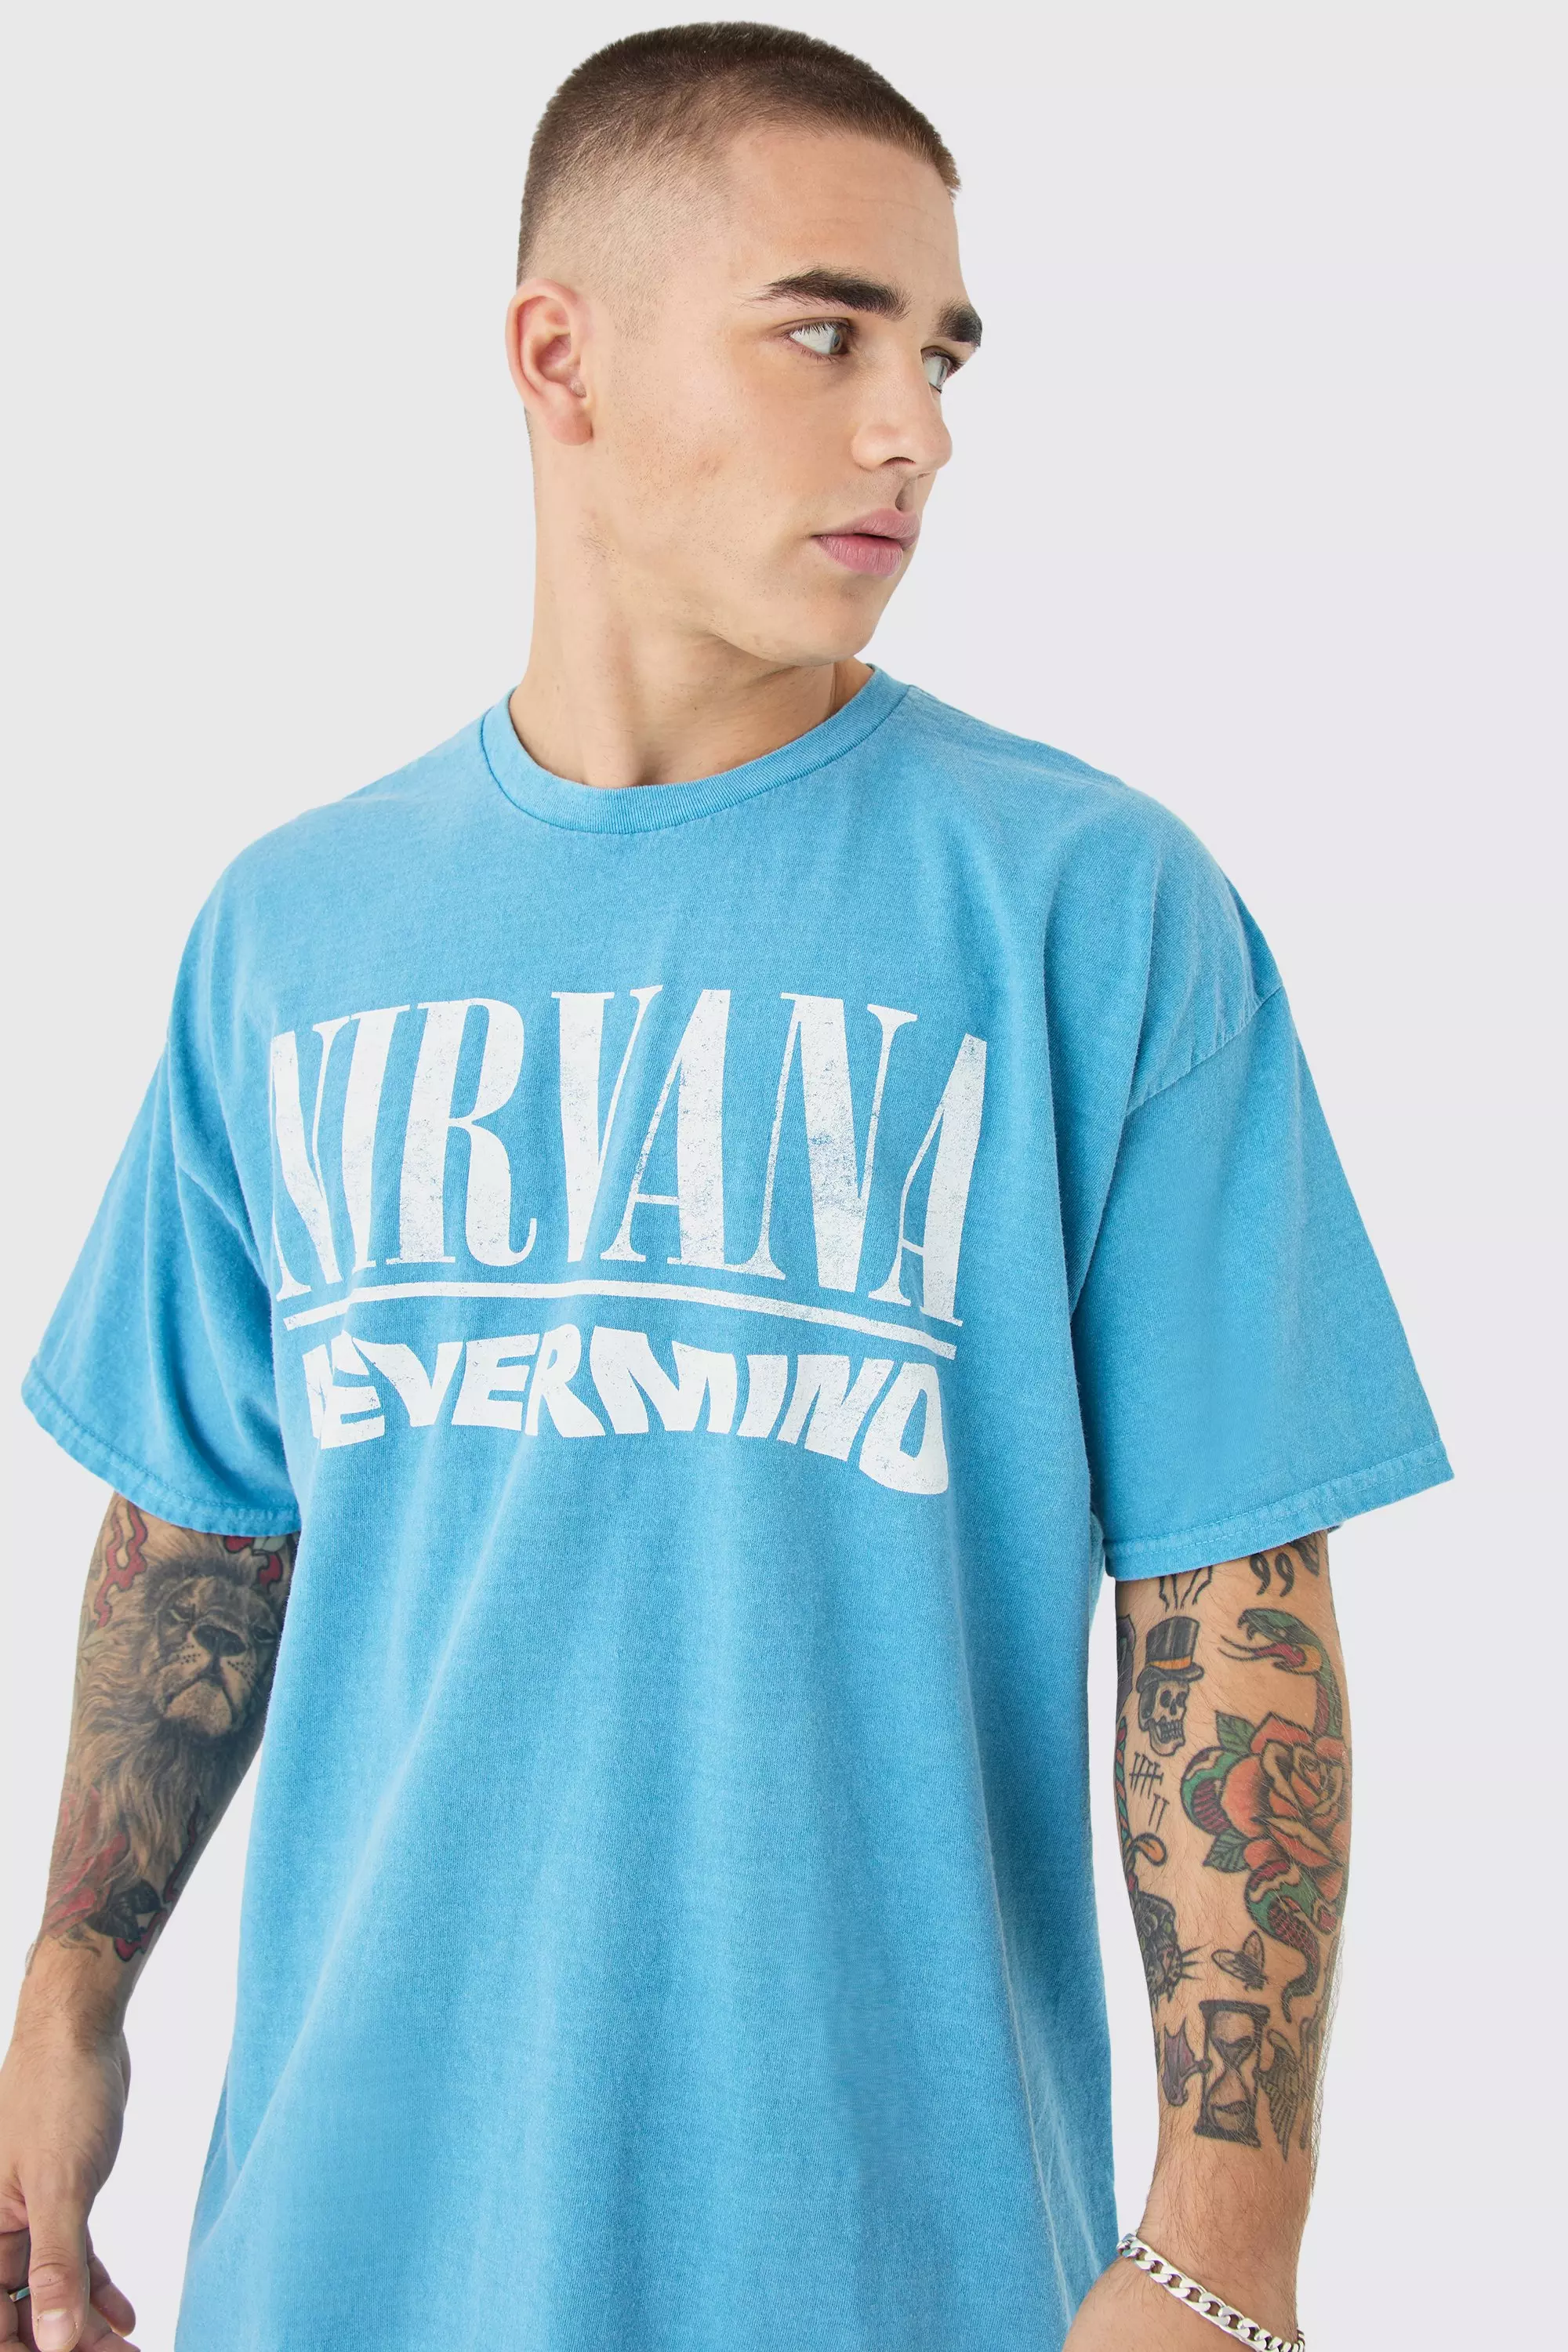 Oversized Nirvana Band Wash License T-shirt Blue